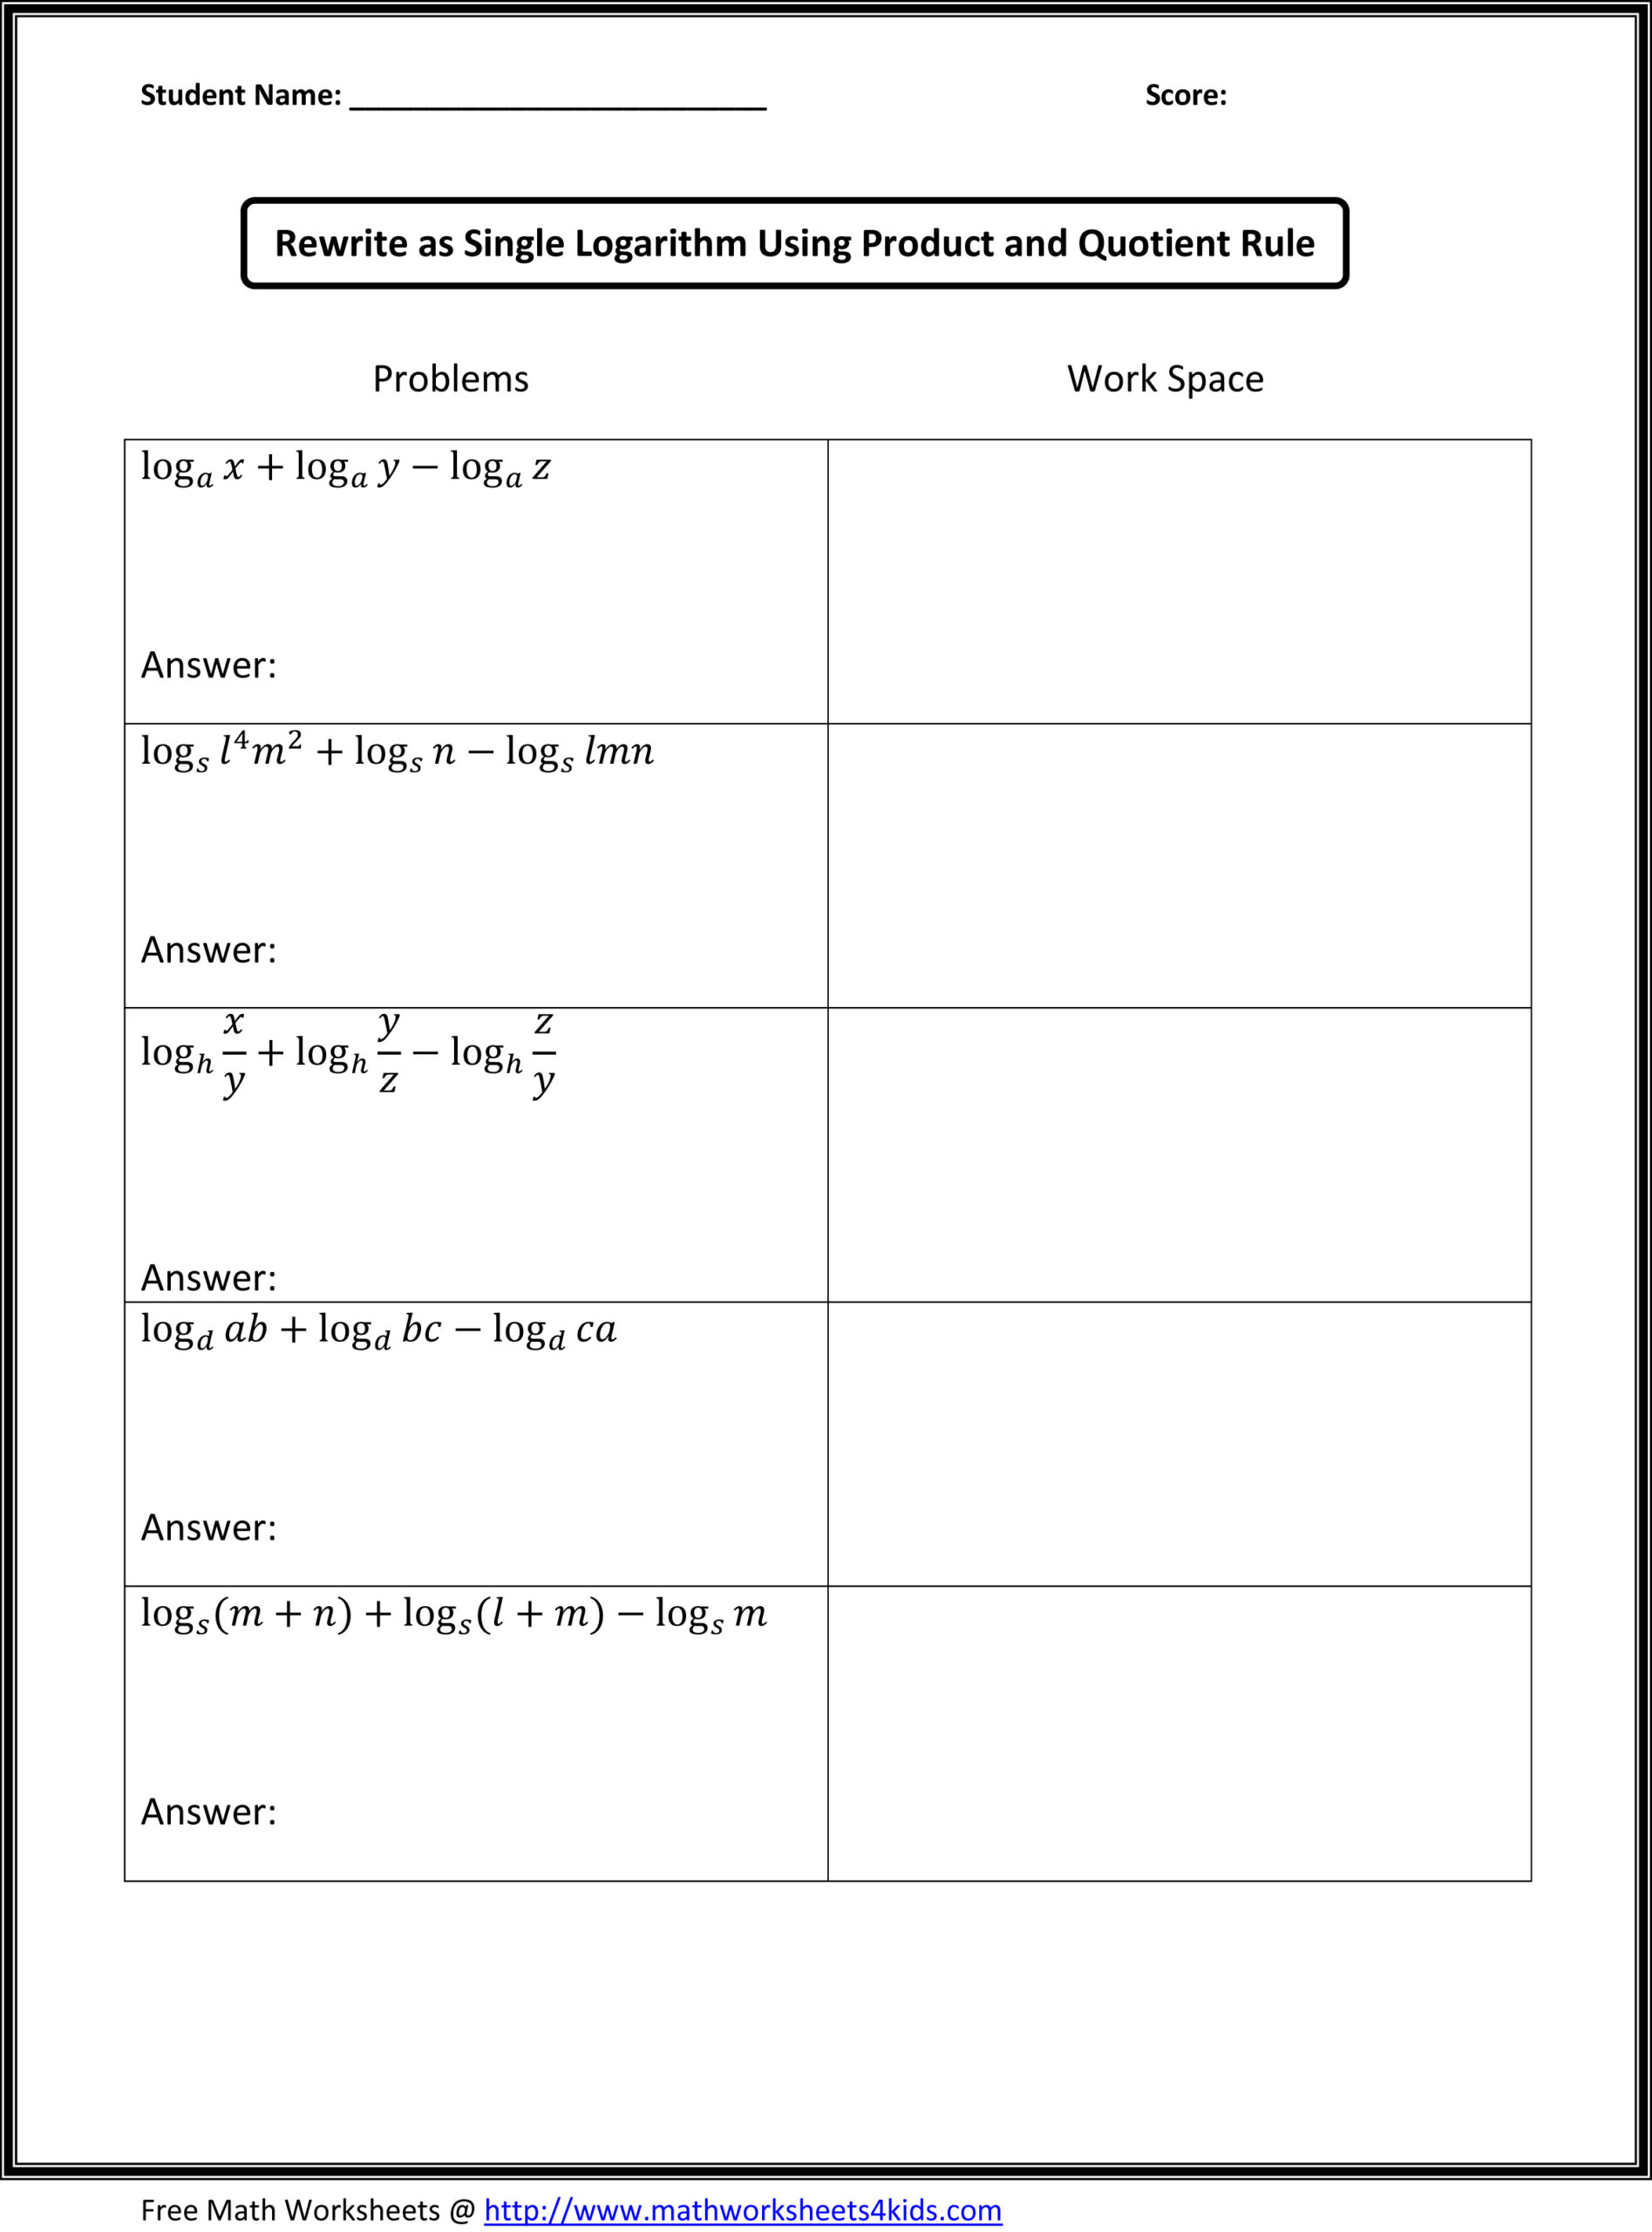 printable-math-worksheets-www-mathworksheets4kids-com-printable-worksheets